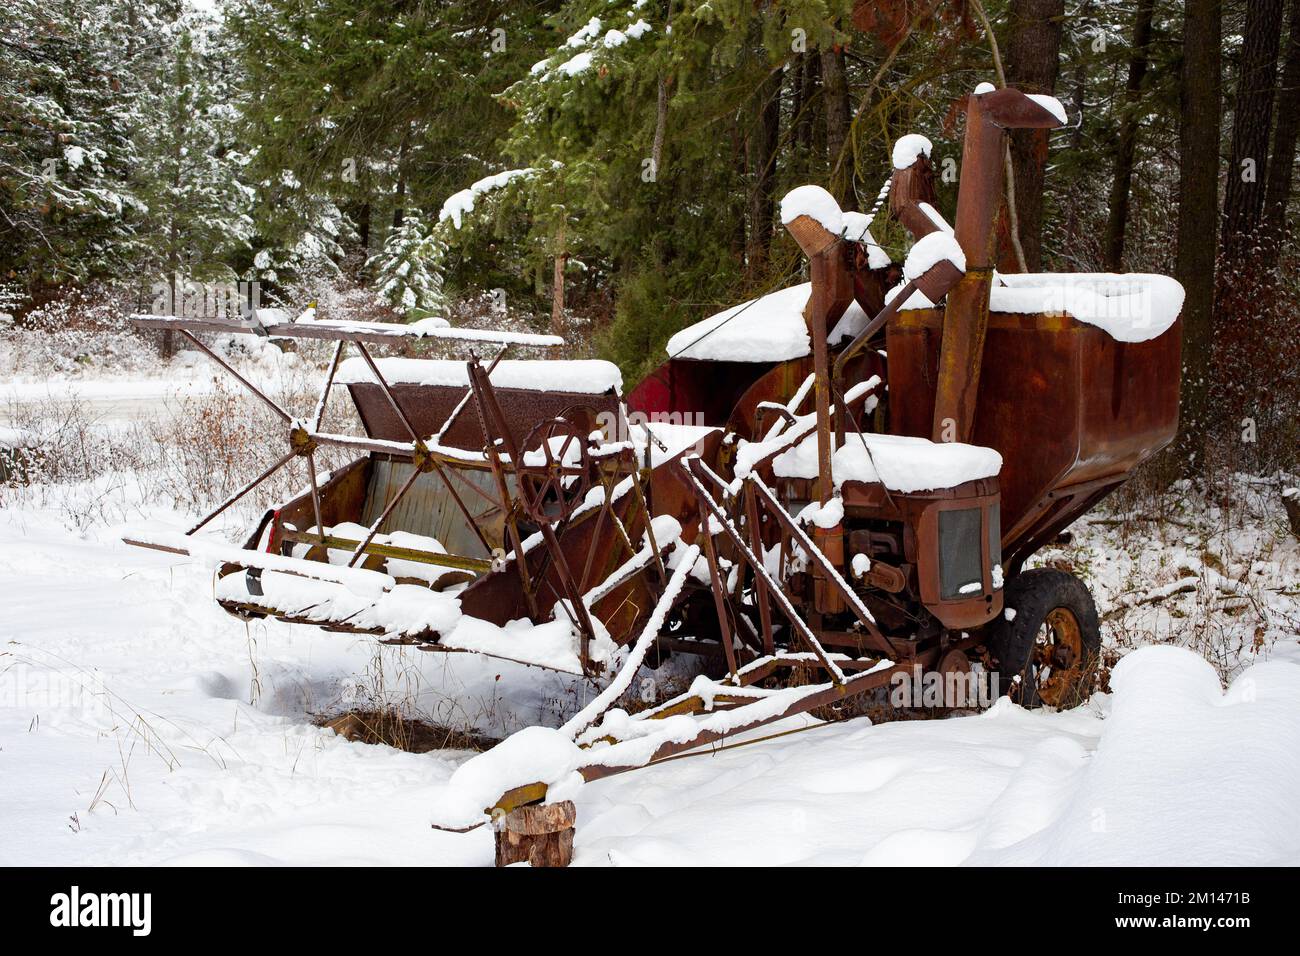 Un vecchio, arrugginito McCormick-Deering No.63 Harvester Thresher nella neve, sul bordo dei boschi, al di fuori di Bonners Ferry, Idaho. Foto Stock